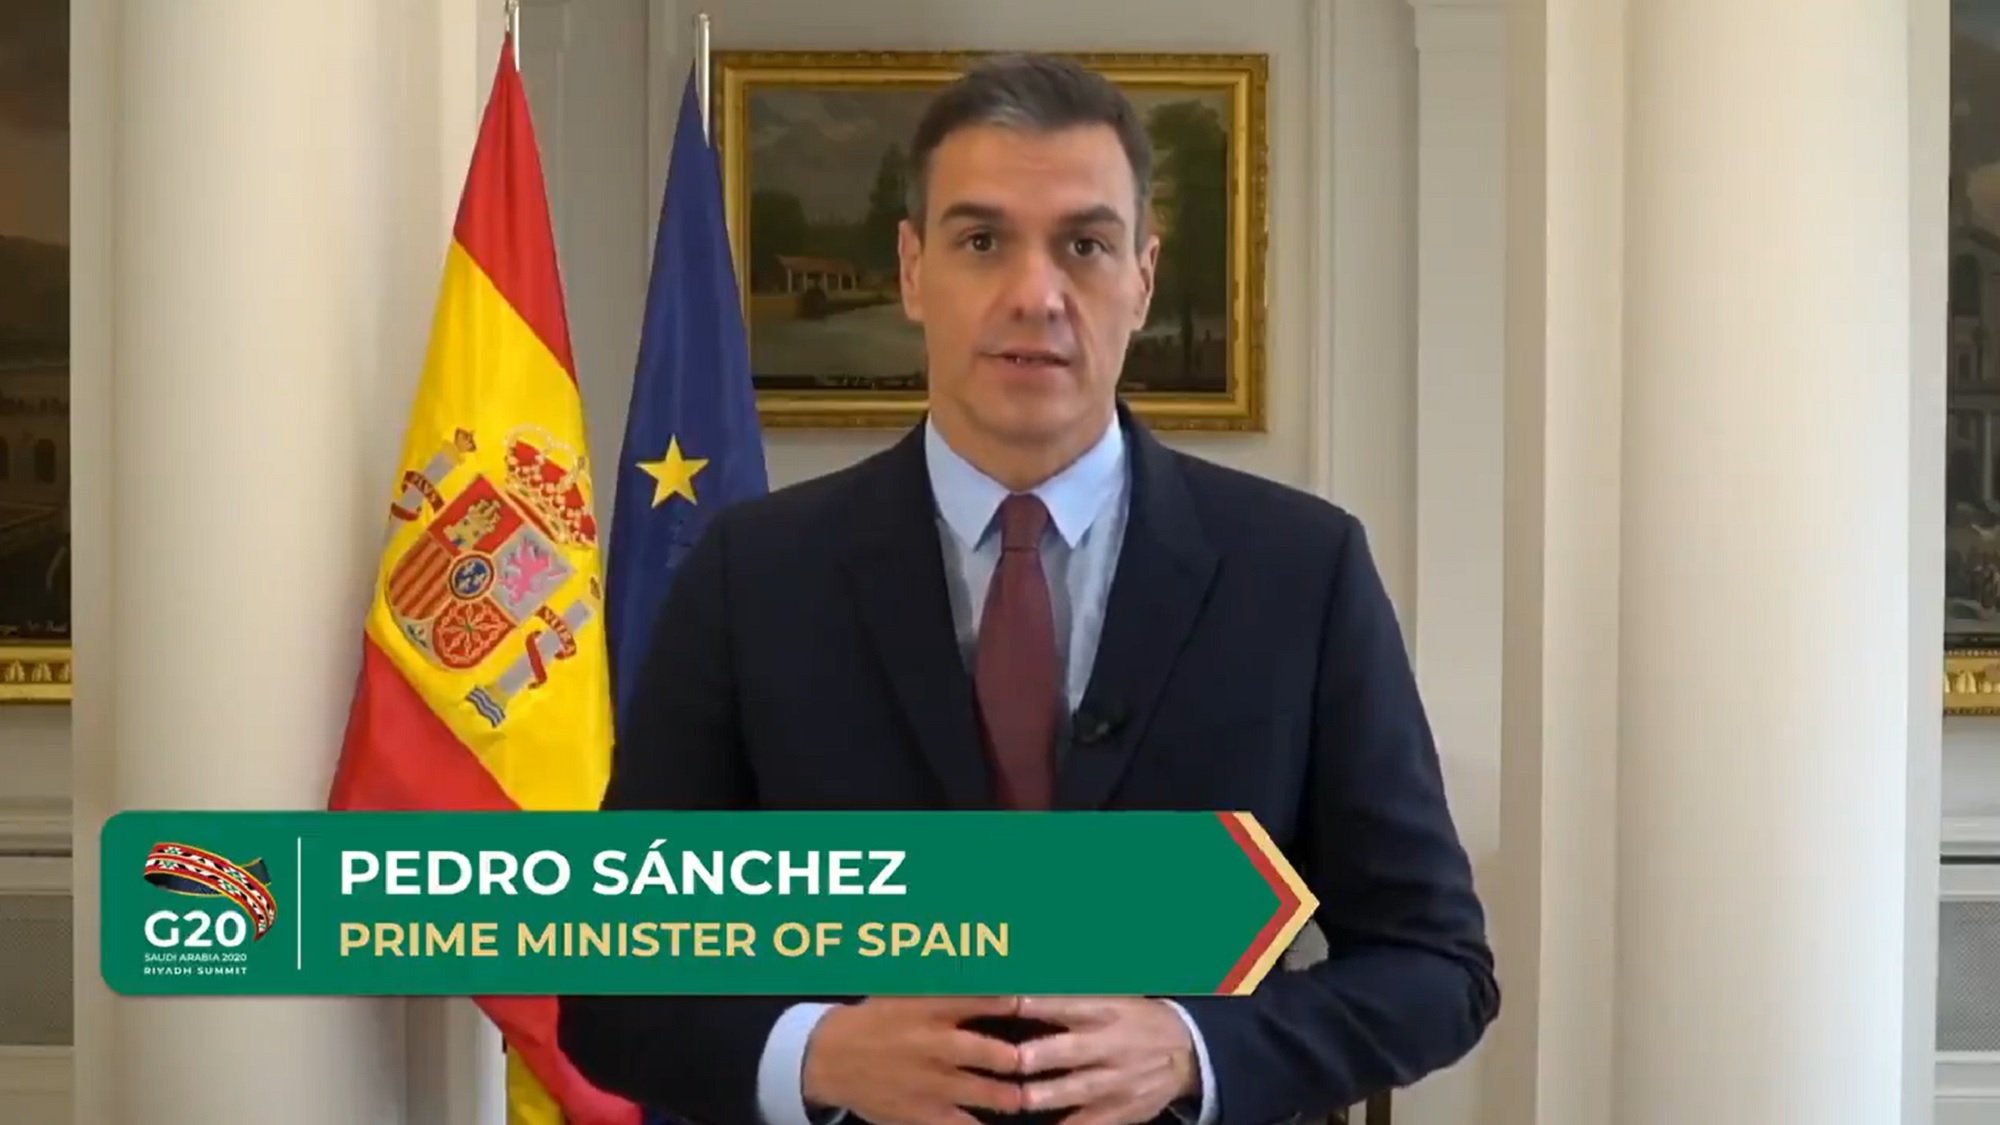 ¿Crees que Pedro Sánchez es quien manda en España?